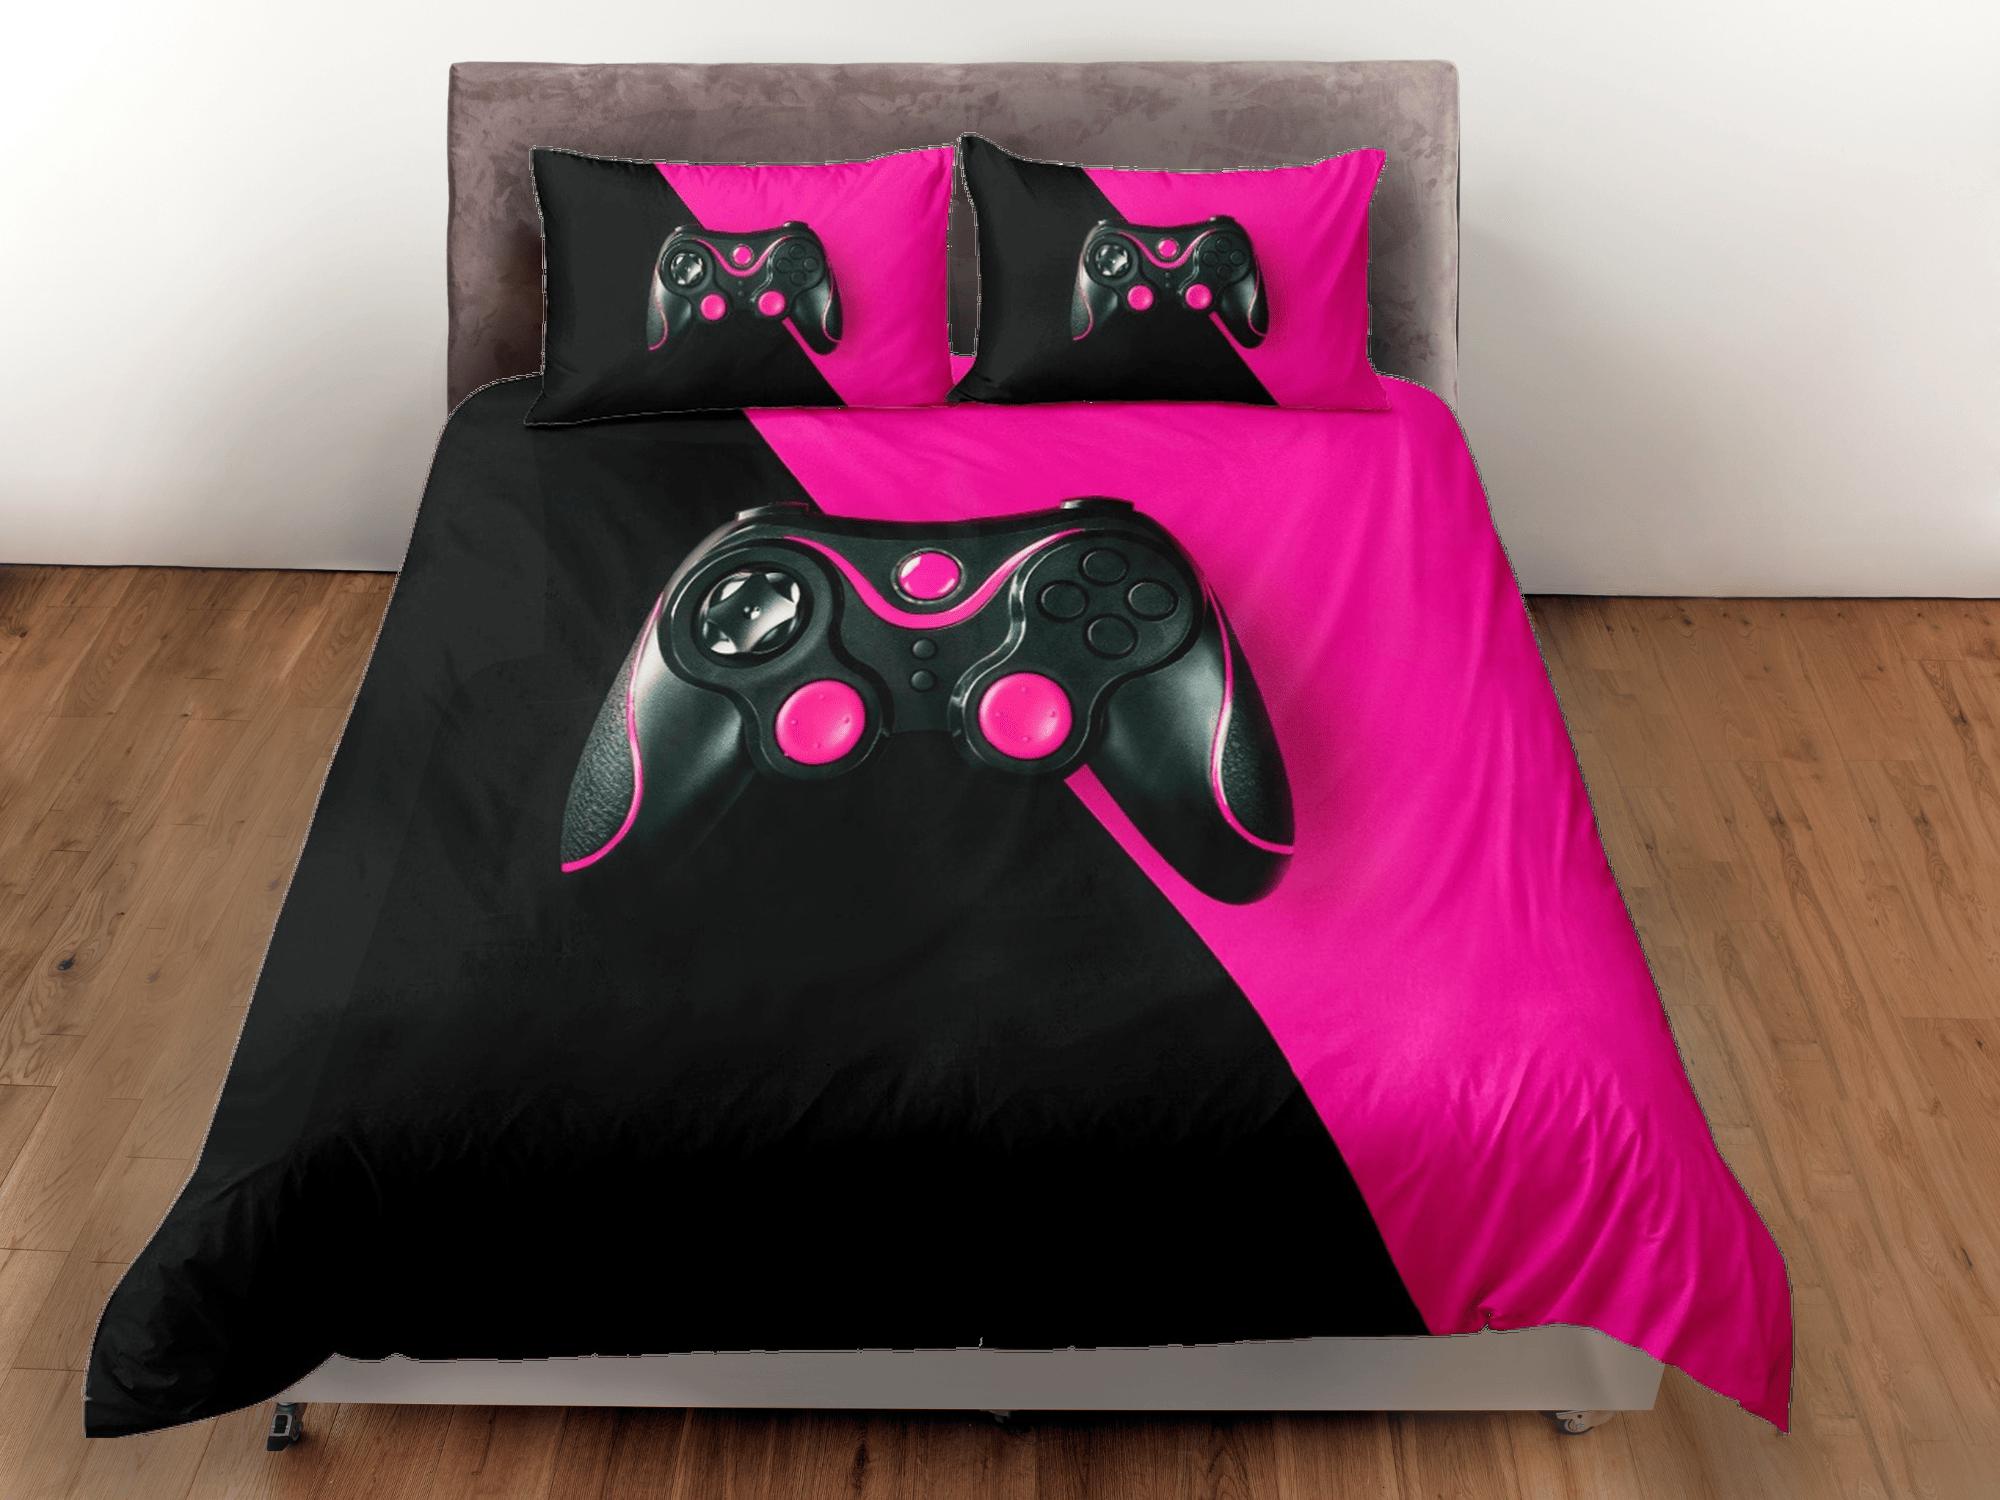 daintyduvet Black and pink gamer bedding duvet cover, video gamer girl gift bedding set full king queen twin, boys bedroom, college dorm bedding